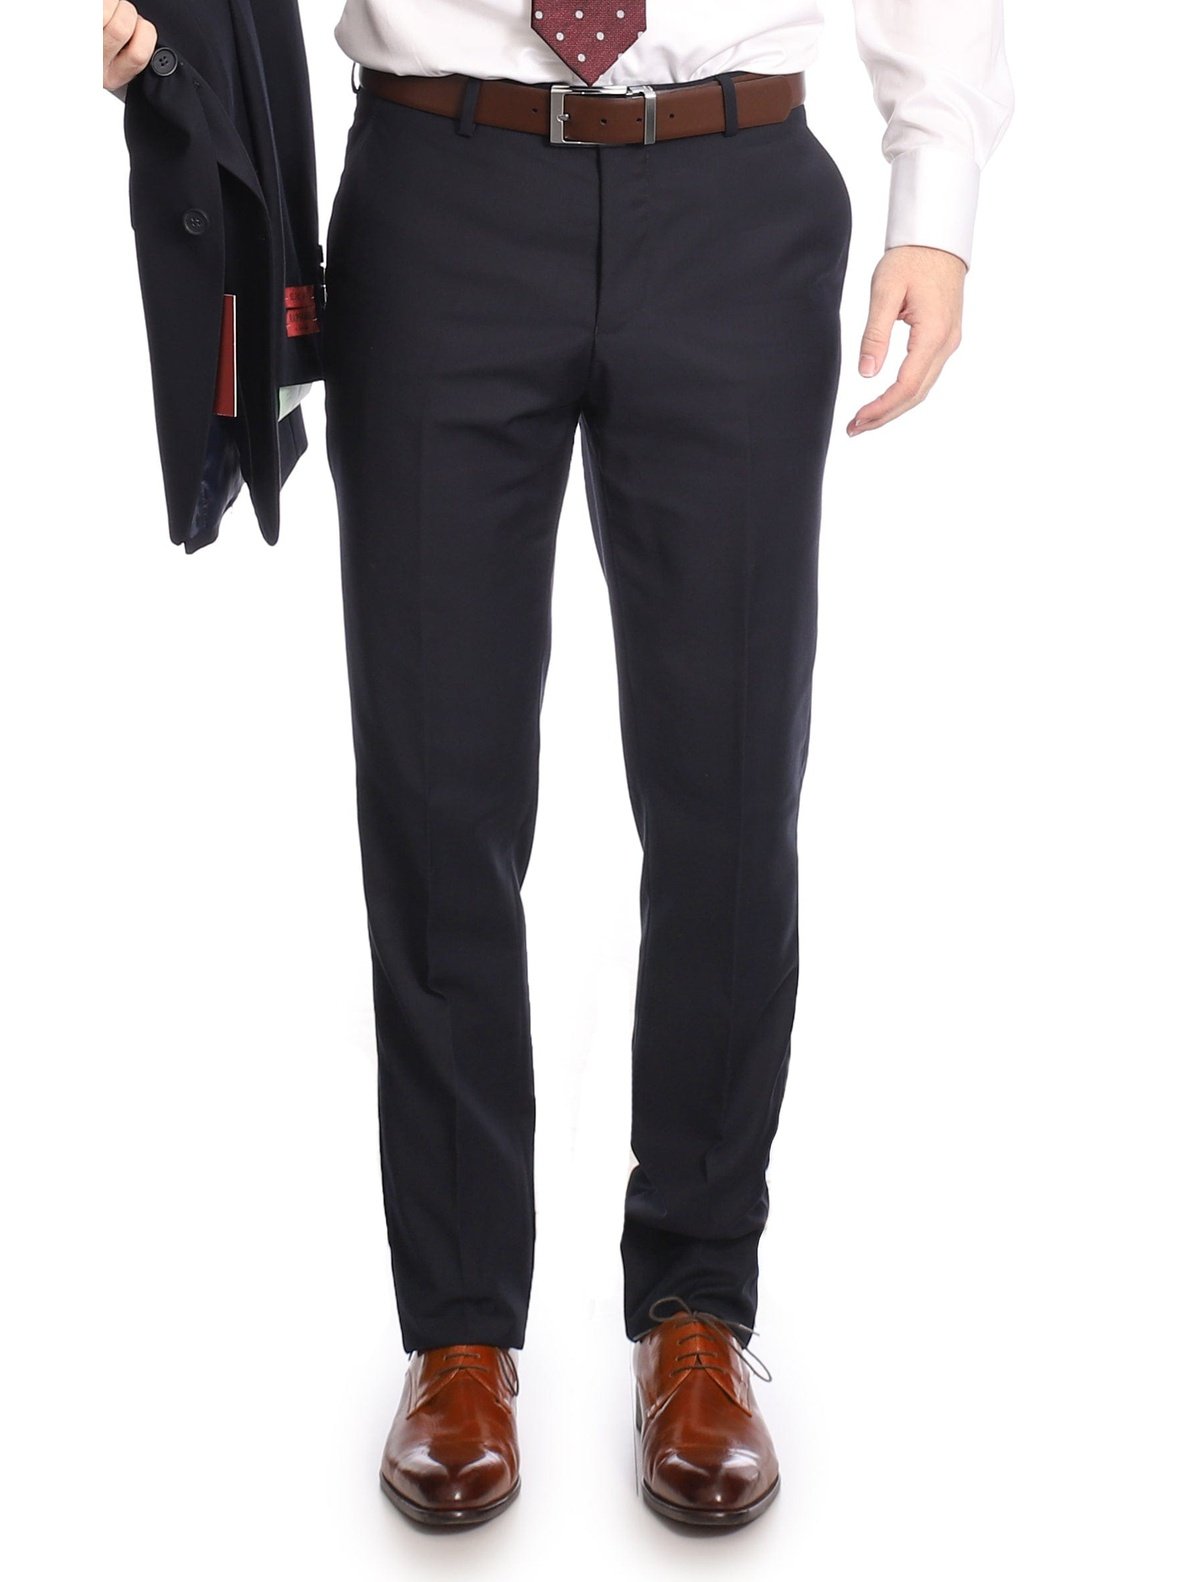 Buy Louis Philippe Blue 2-Piece Suit for Men's Online @ Tata CLiQ